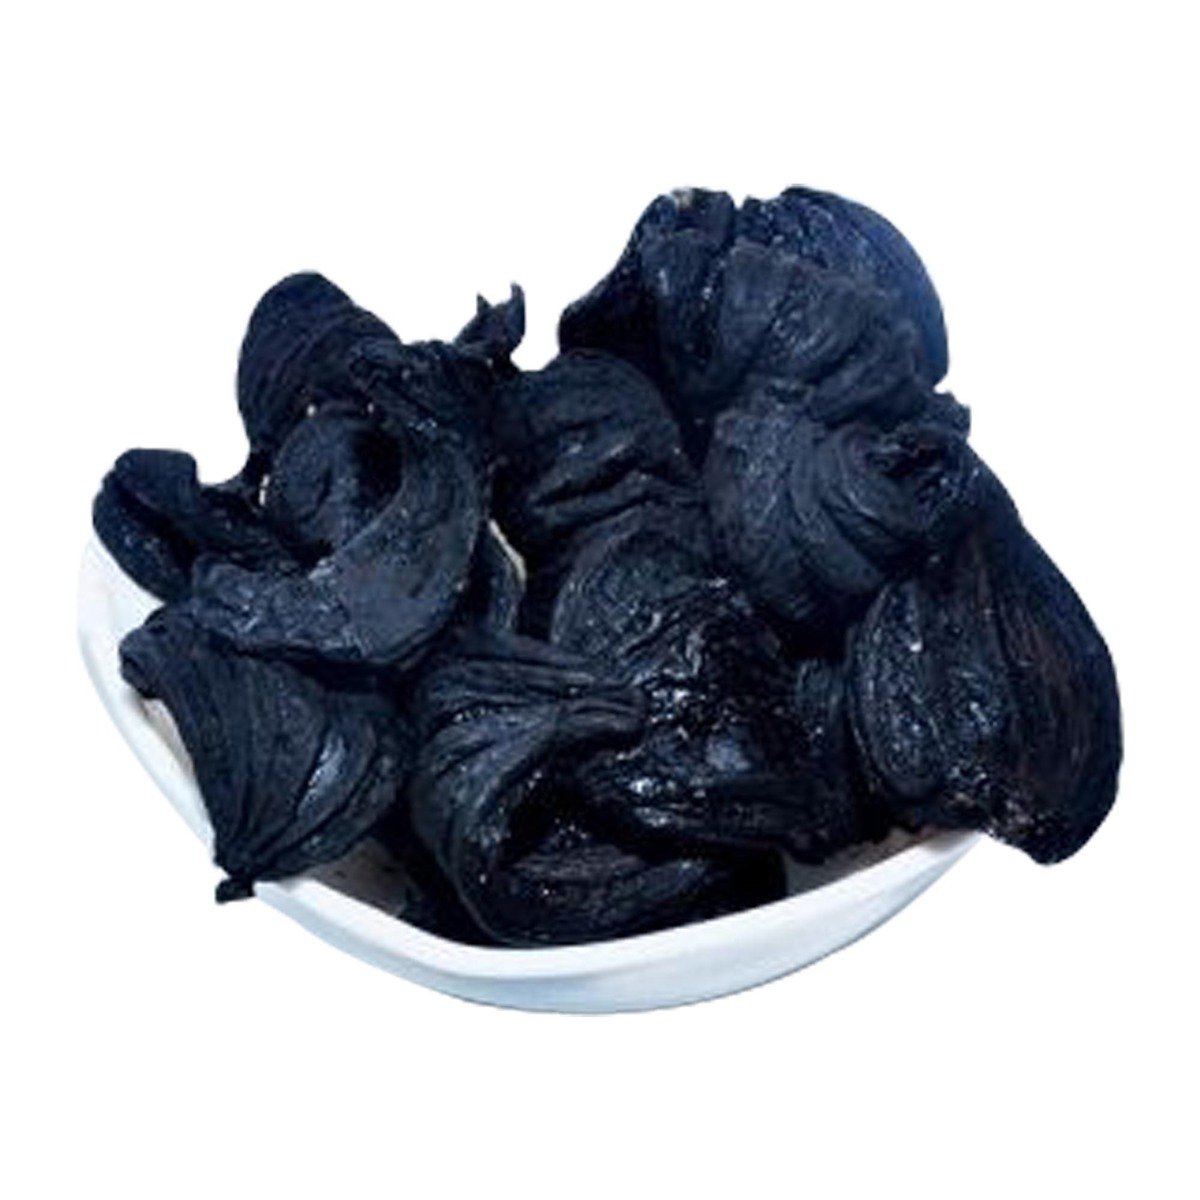 Buy Fresh Black Tamarind (Kudam Puli/ Brindle berry/Garcinia Cambogia) 250 g Online at Best Price | Flavouring Vegetable | Lulu KSA in UAE